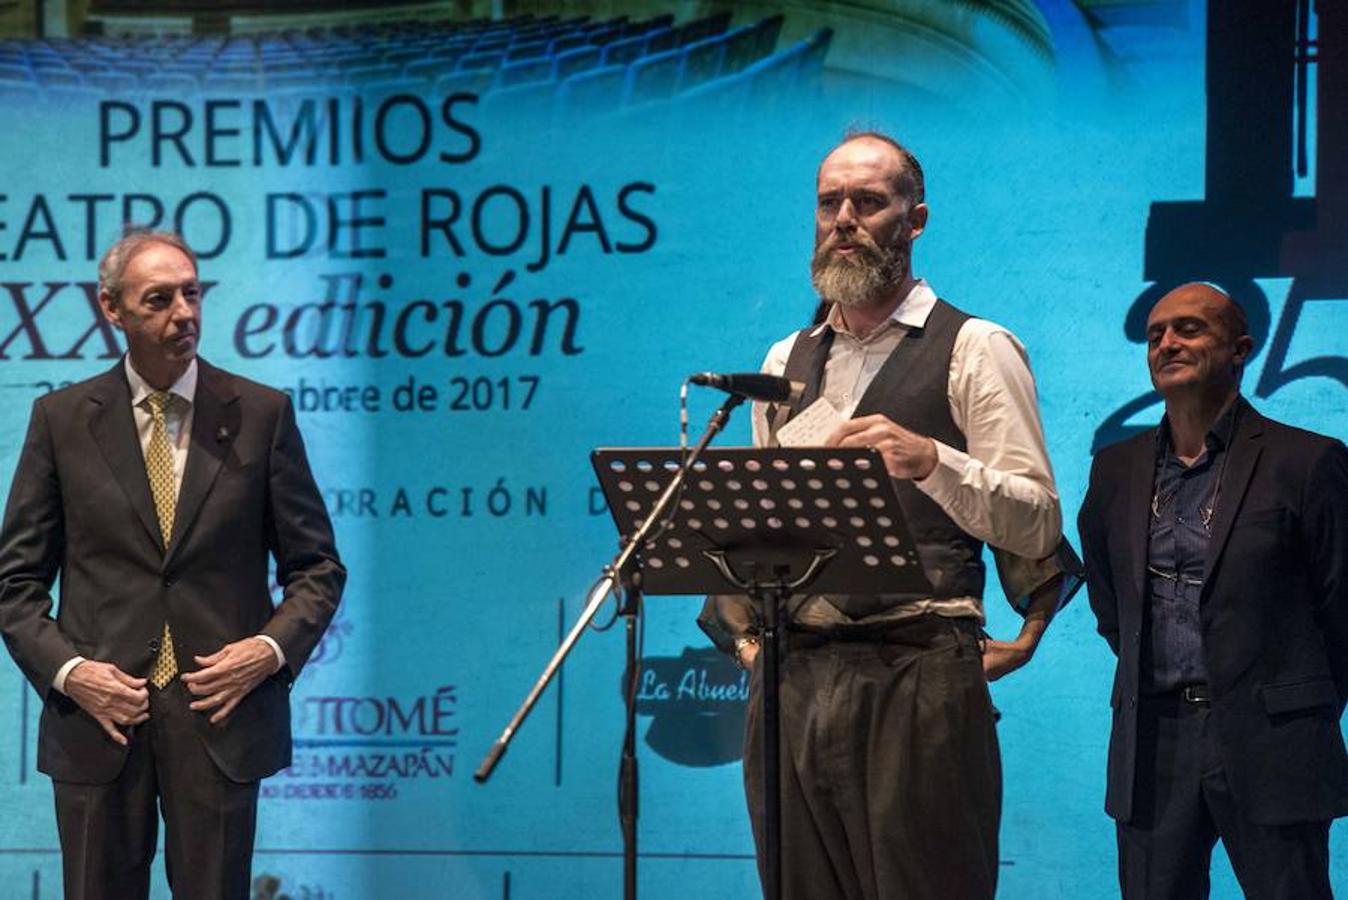 Hamlet, la obra más premiada. Uno de los protagonistas del montaje recogió uno de los premios, entregado por el concejal José María González Cabezas